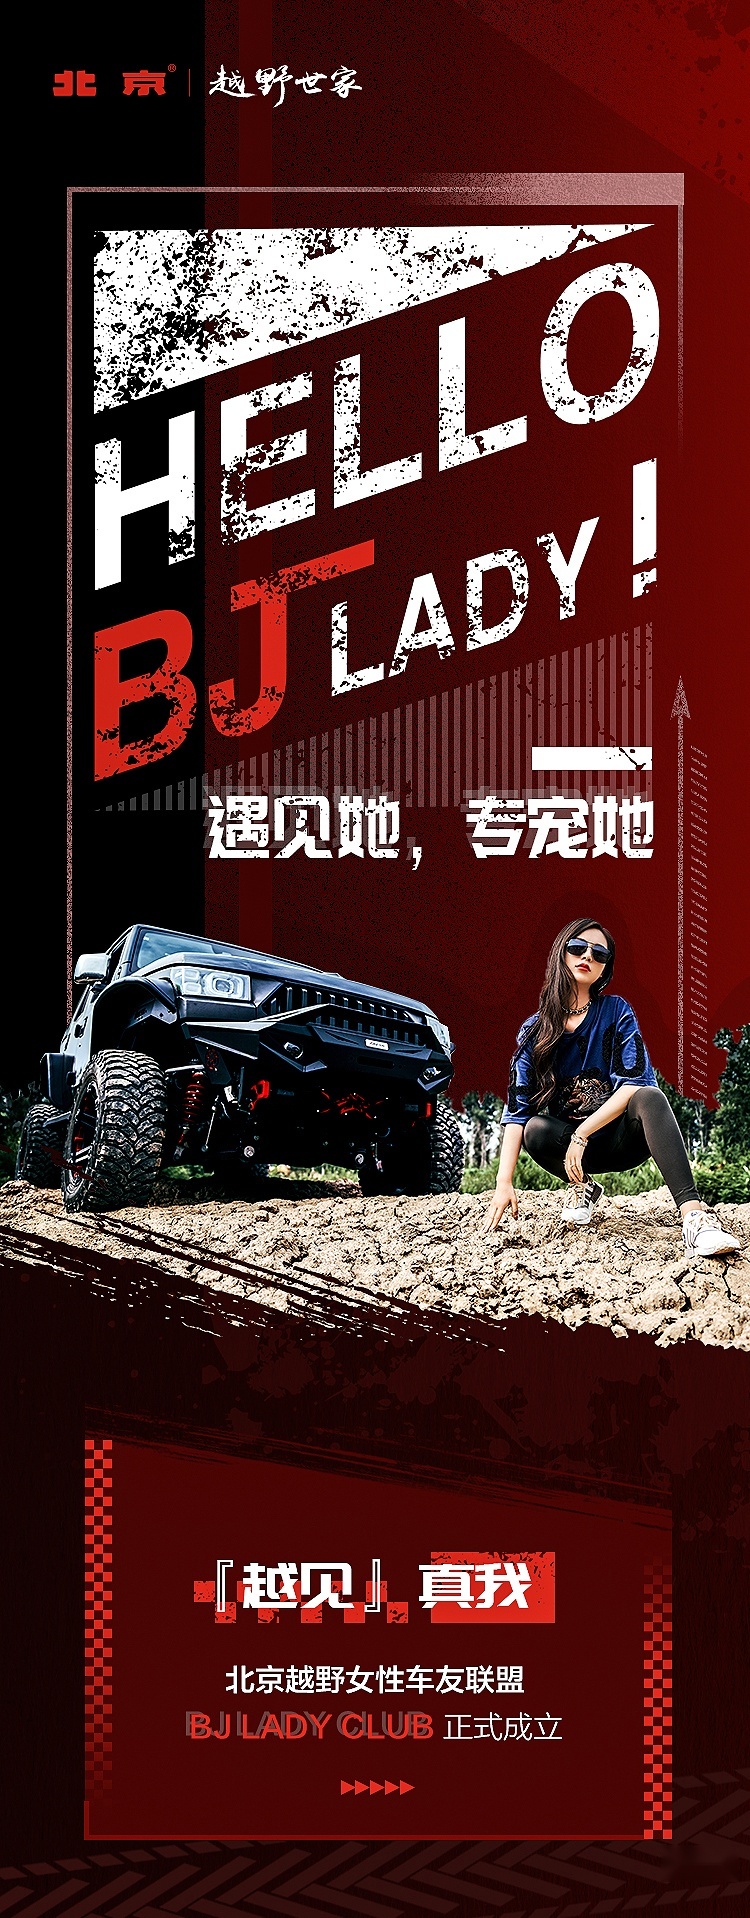 六大权益独享 北京越野BJ Lady车友联盟只为“她”而来